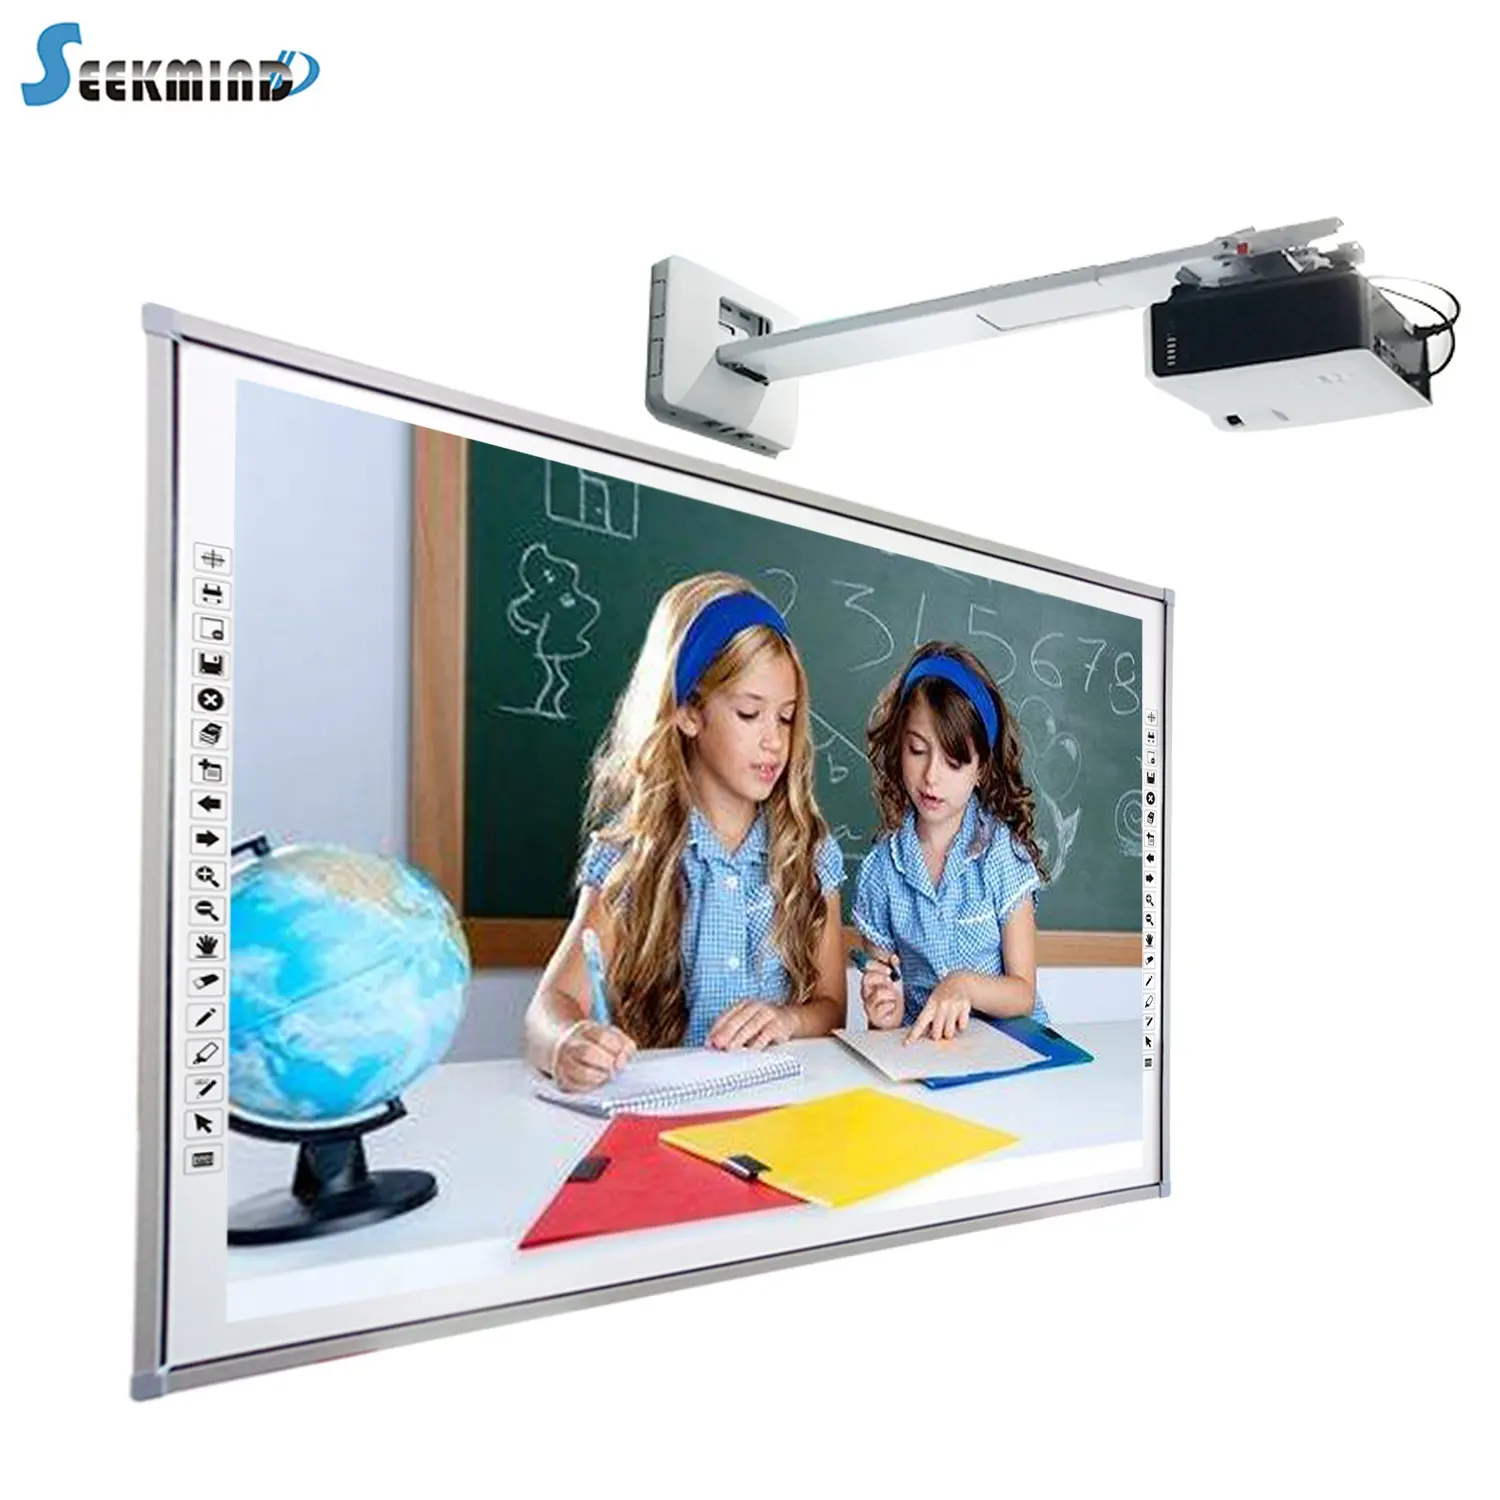 Infrared intelligent teaching whiteboard for school digital whiteboard electronic blackboard